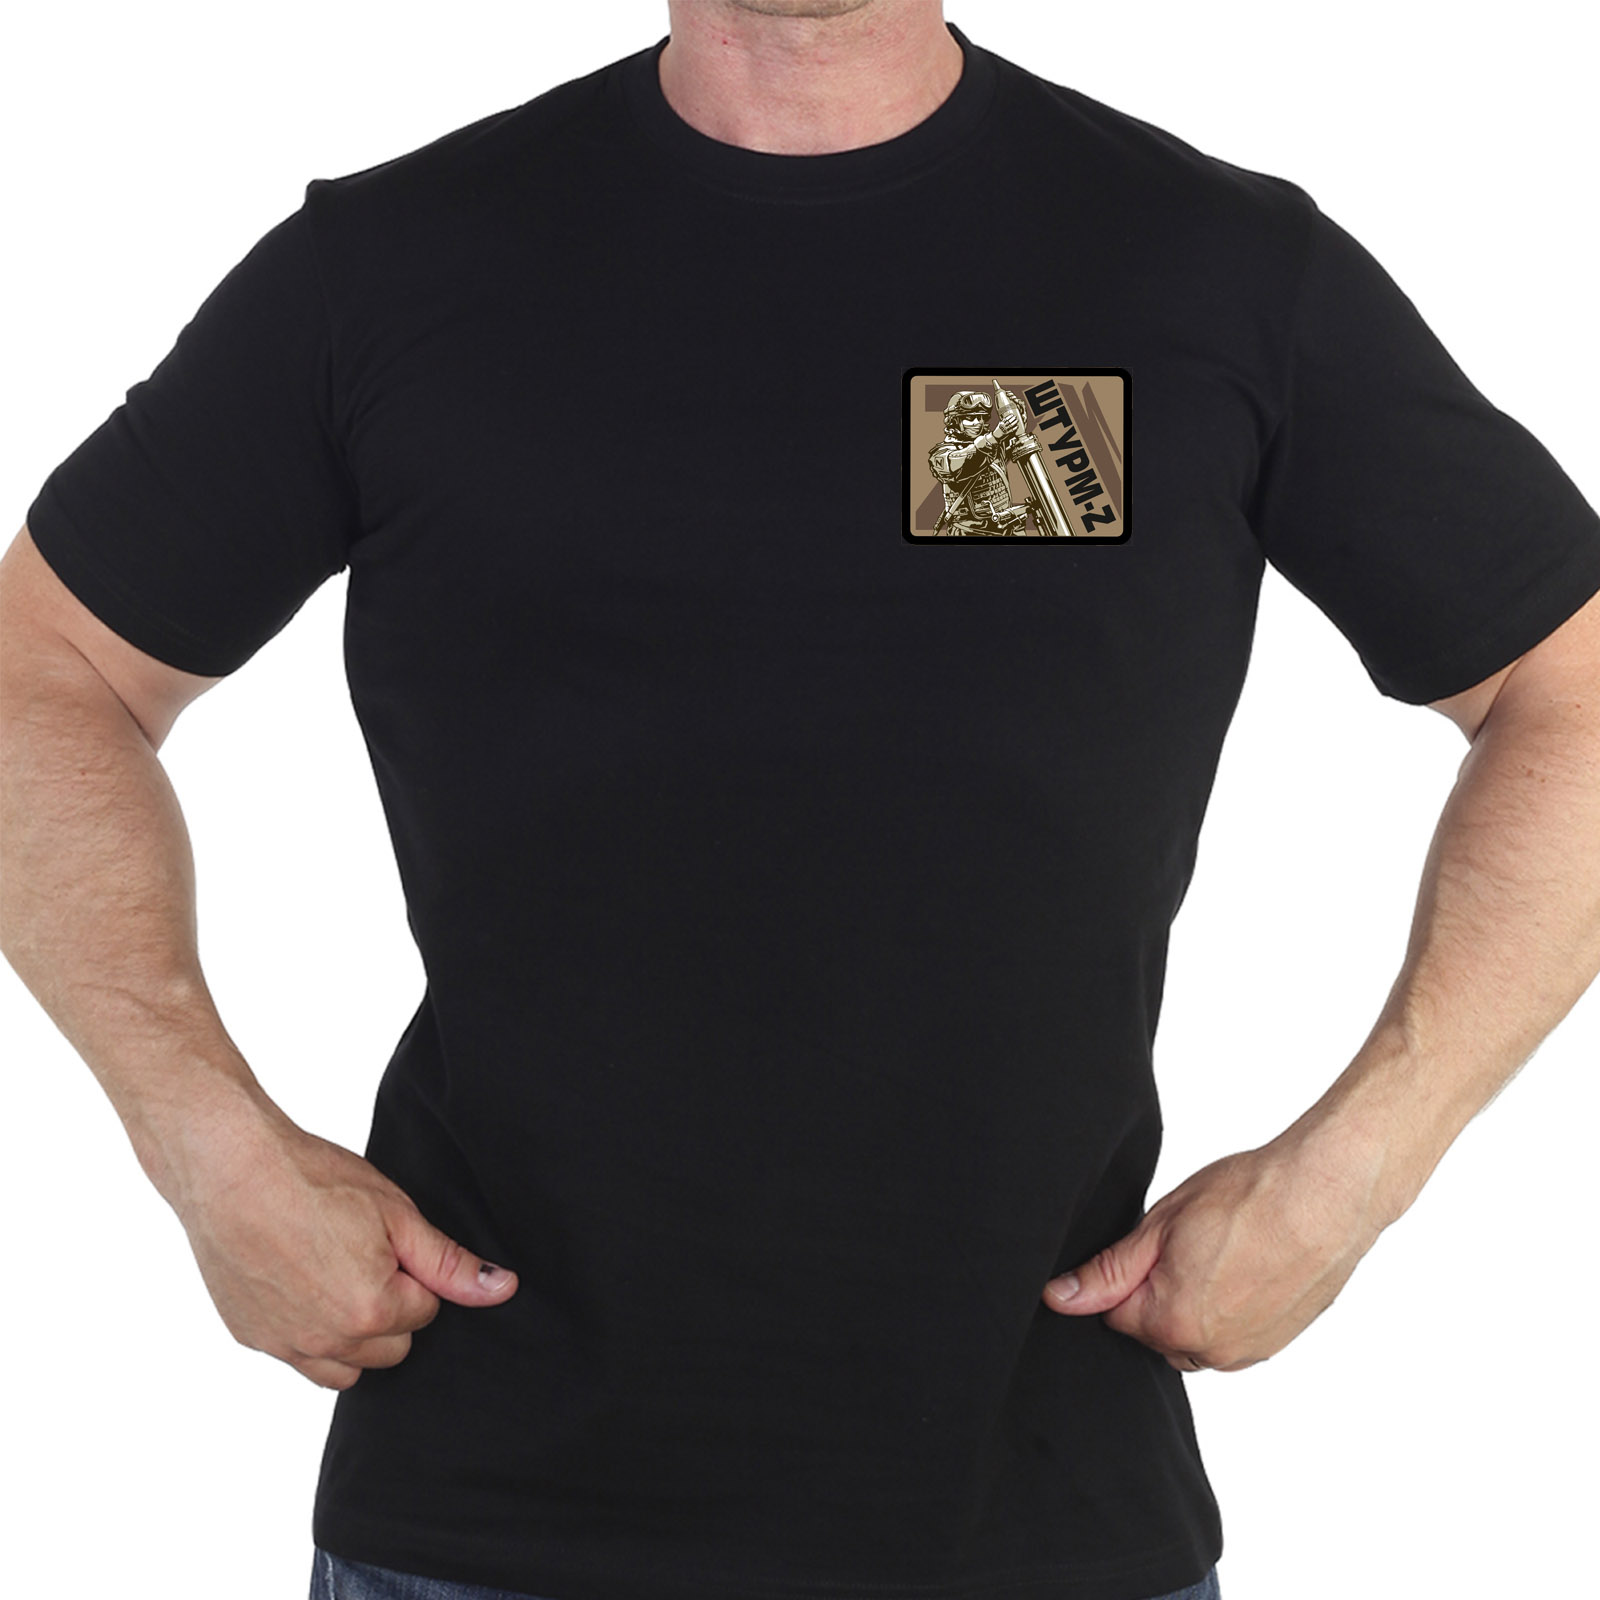 Купить черную футболку с термотрансфером "Штурм-Z"